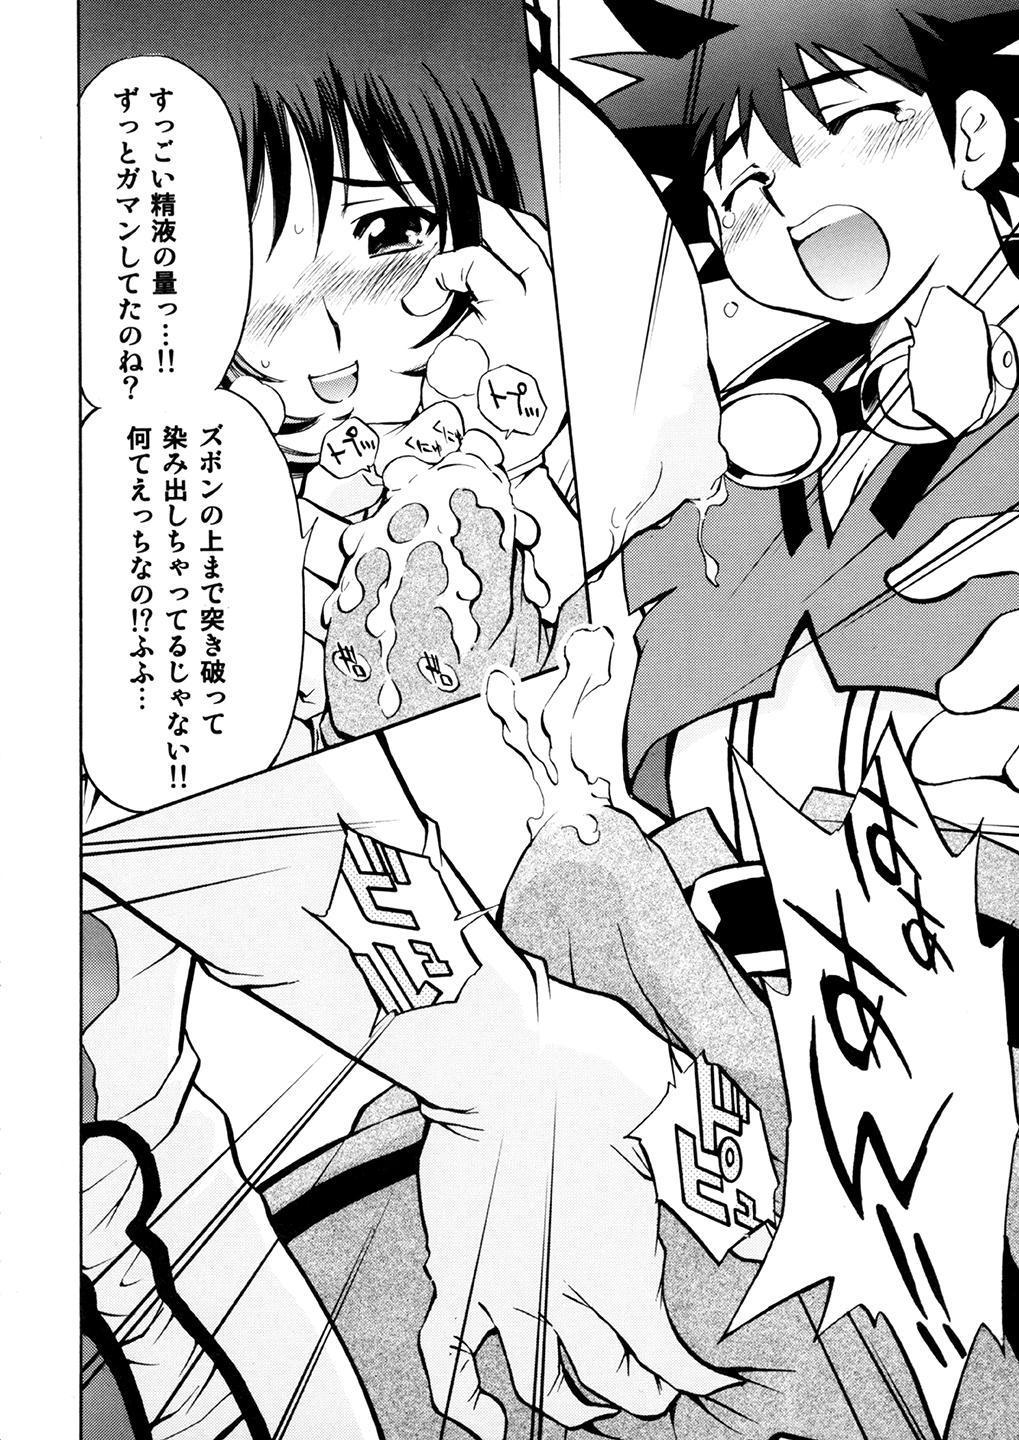 Piercing Kotona & Rei Mii - Zoids genesis Teenporno - Page 11